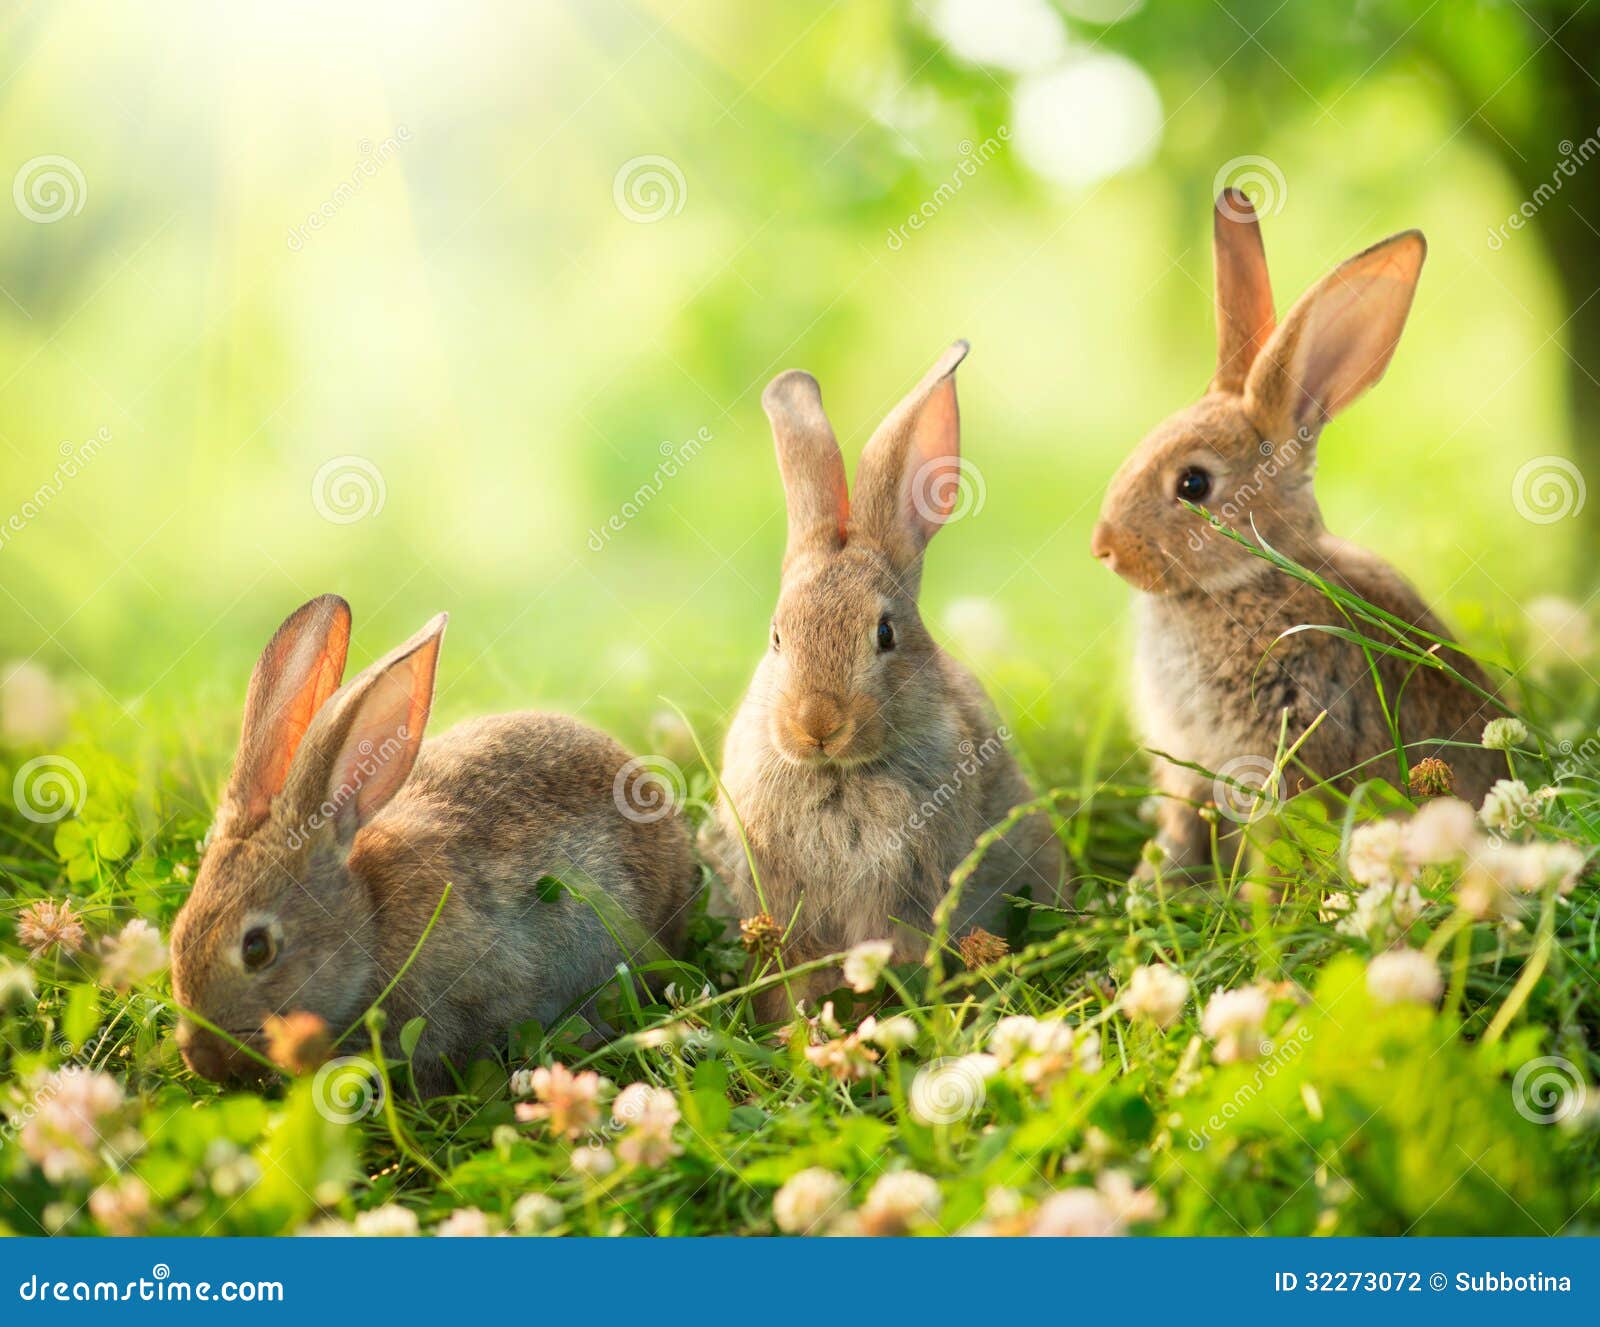 little easter bunnies